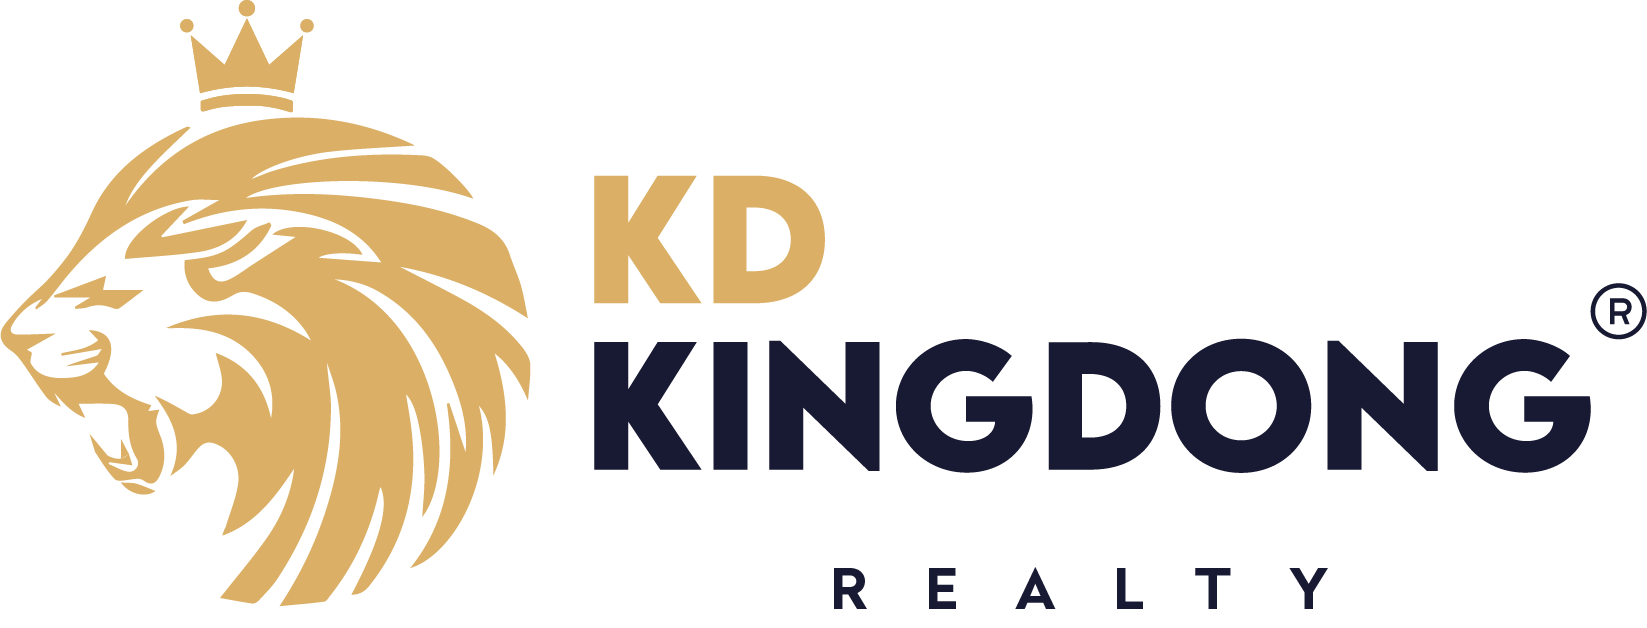 KD Kingdong Realty